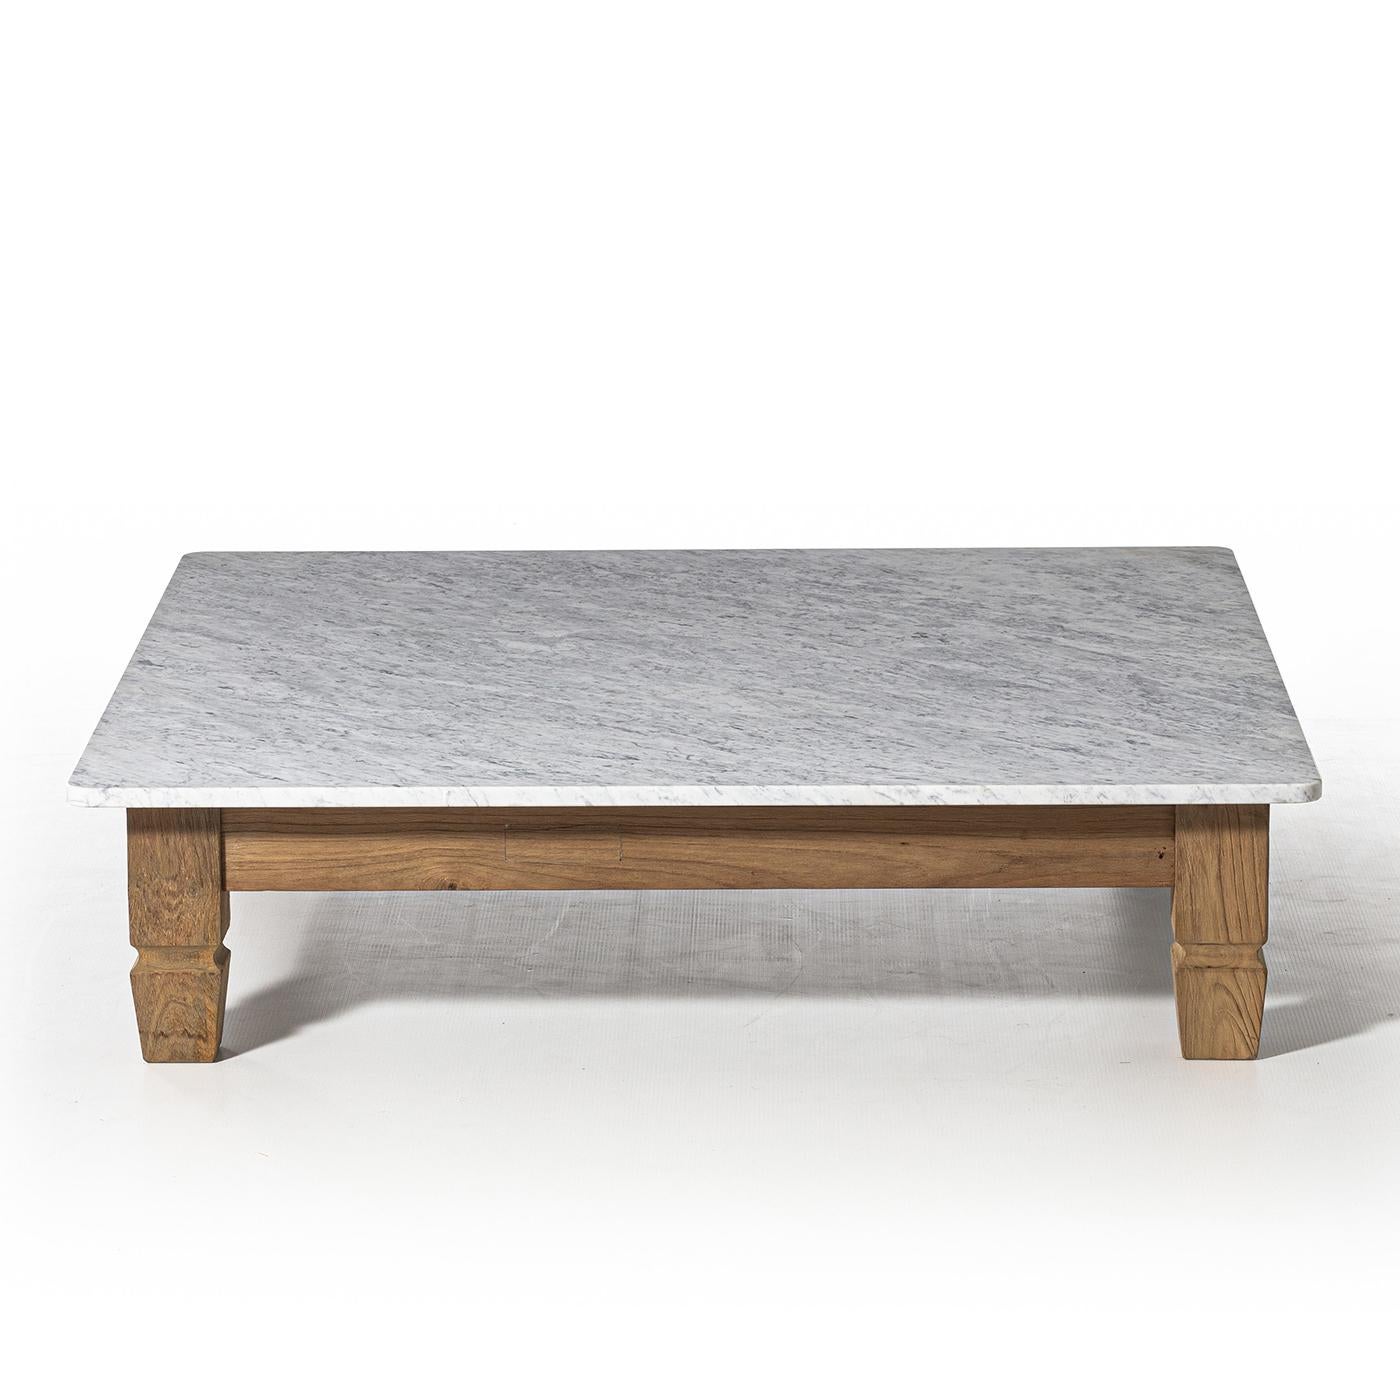 Table basse Barletta avec structure en teck massif
en bois et avec un plateau en marbre blanc carrare poli.